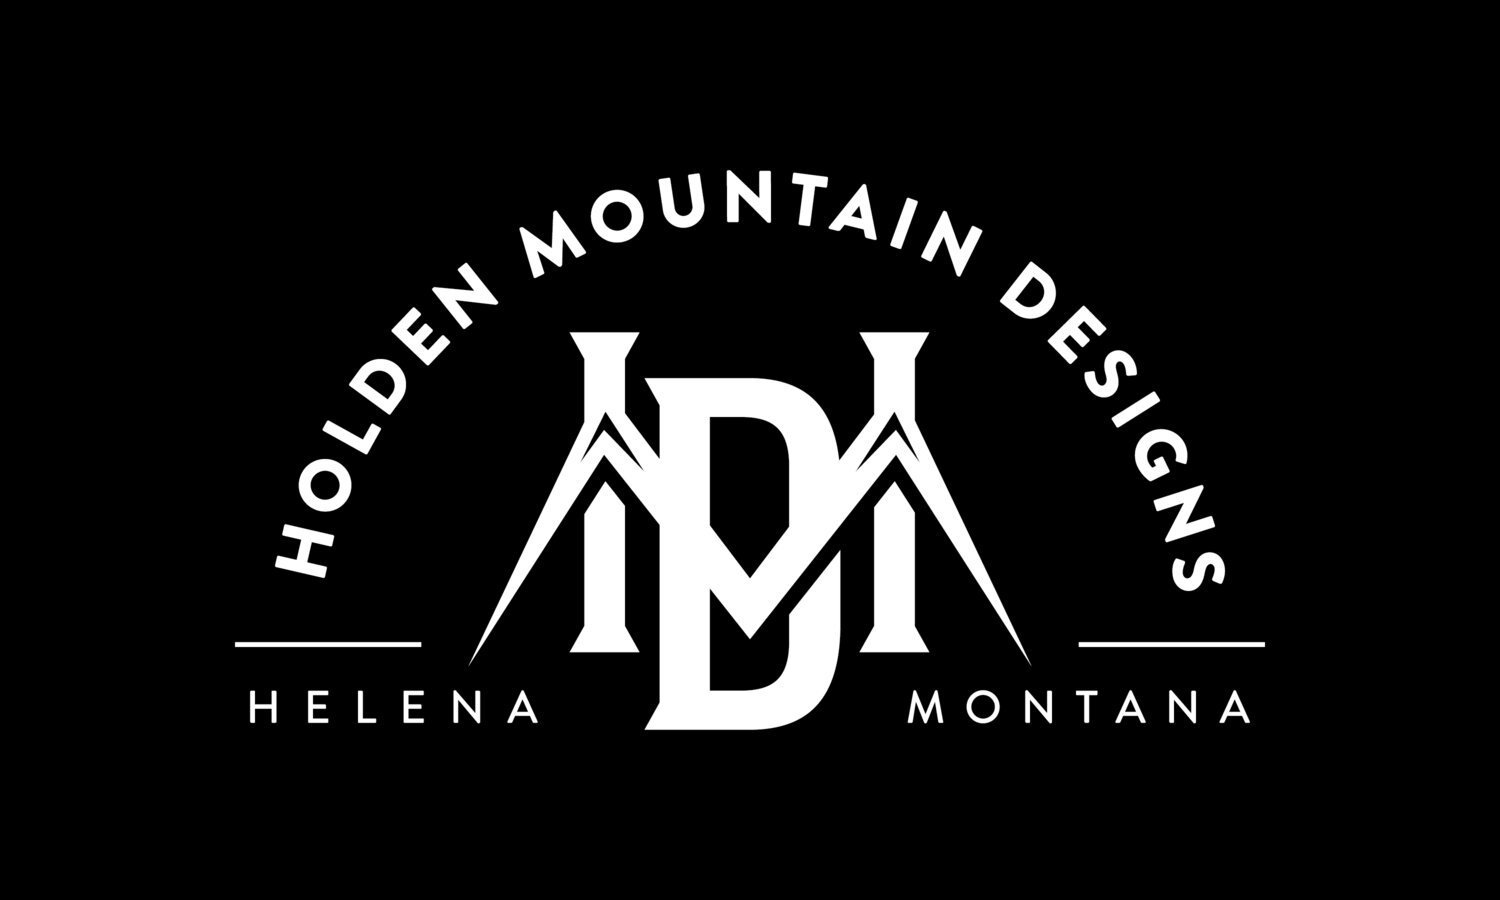 Holden Mountain Designs